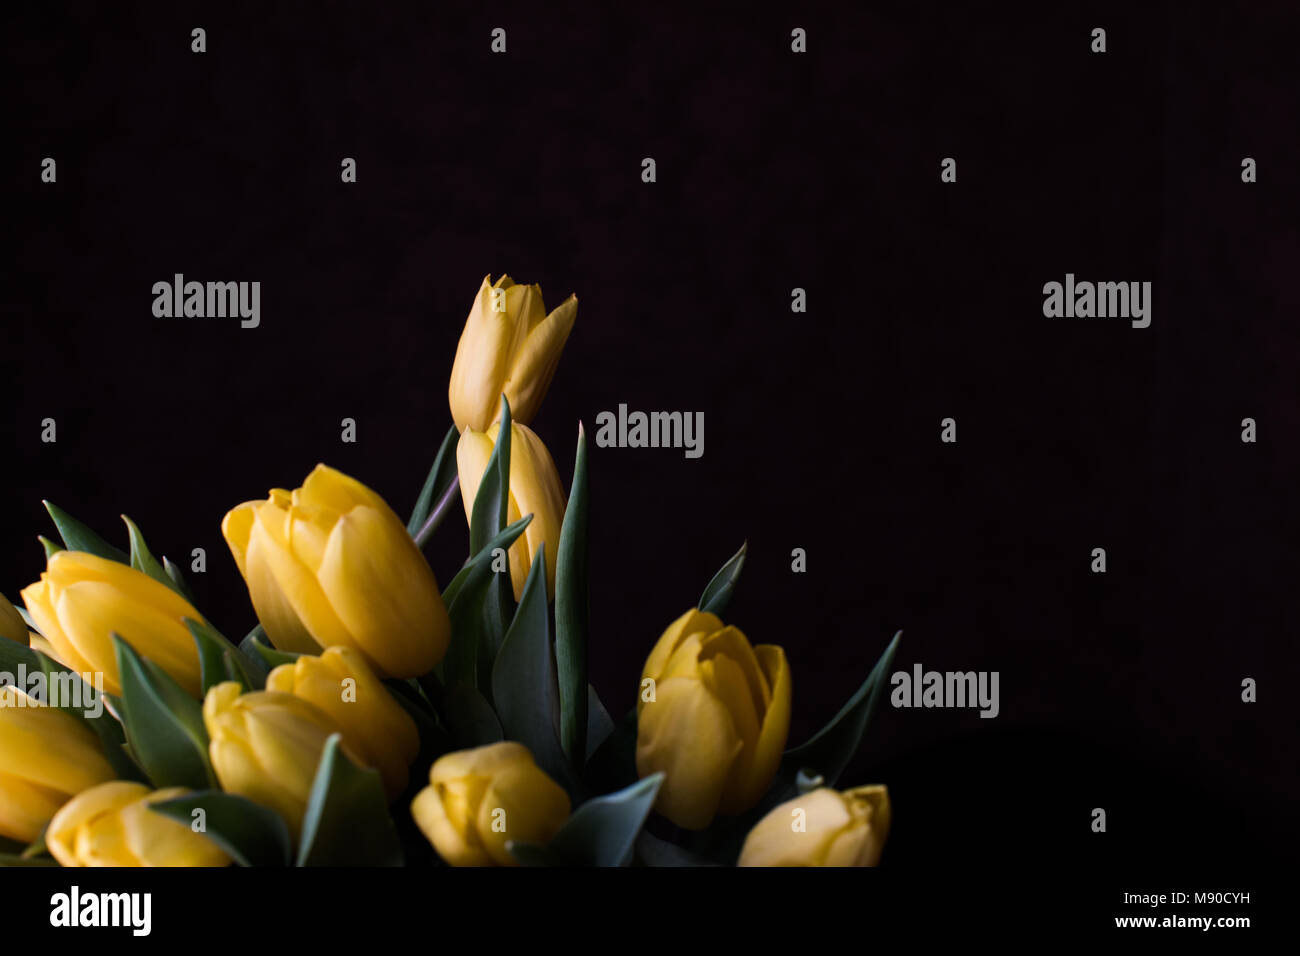 Gelbe Tulpen auf schwarzem Hintergrund. Frühling - Poster mit Freier Text. Stockfoto